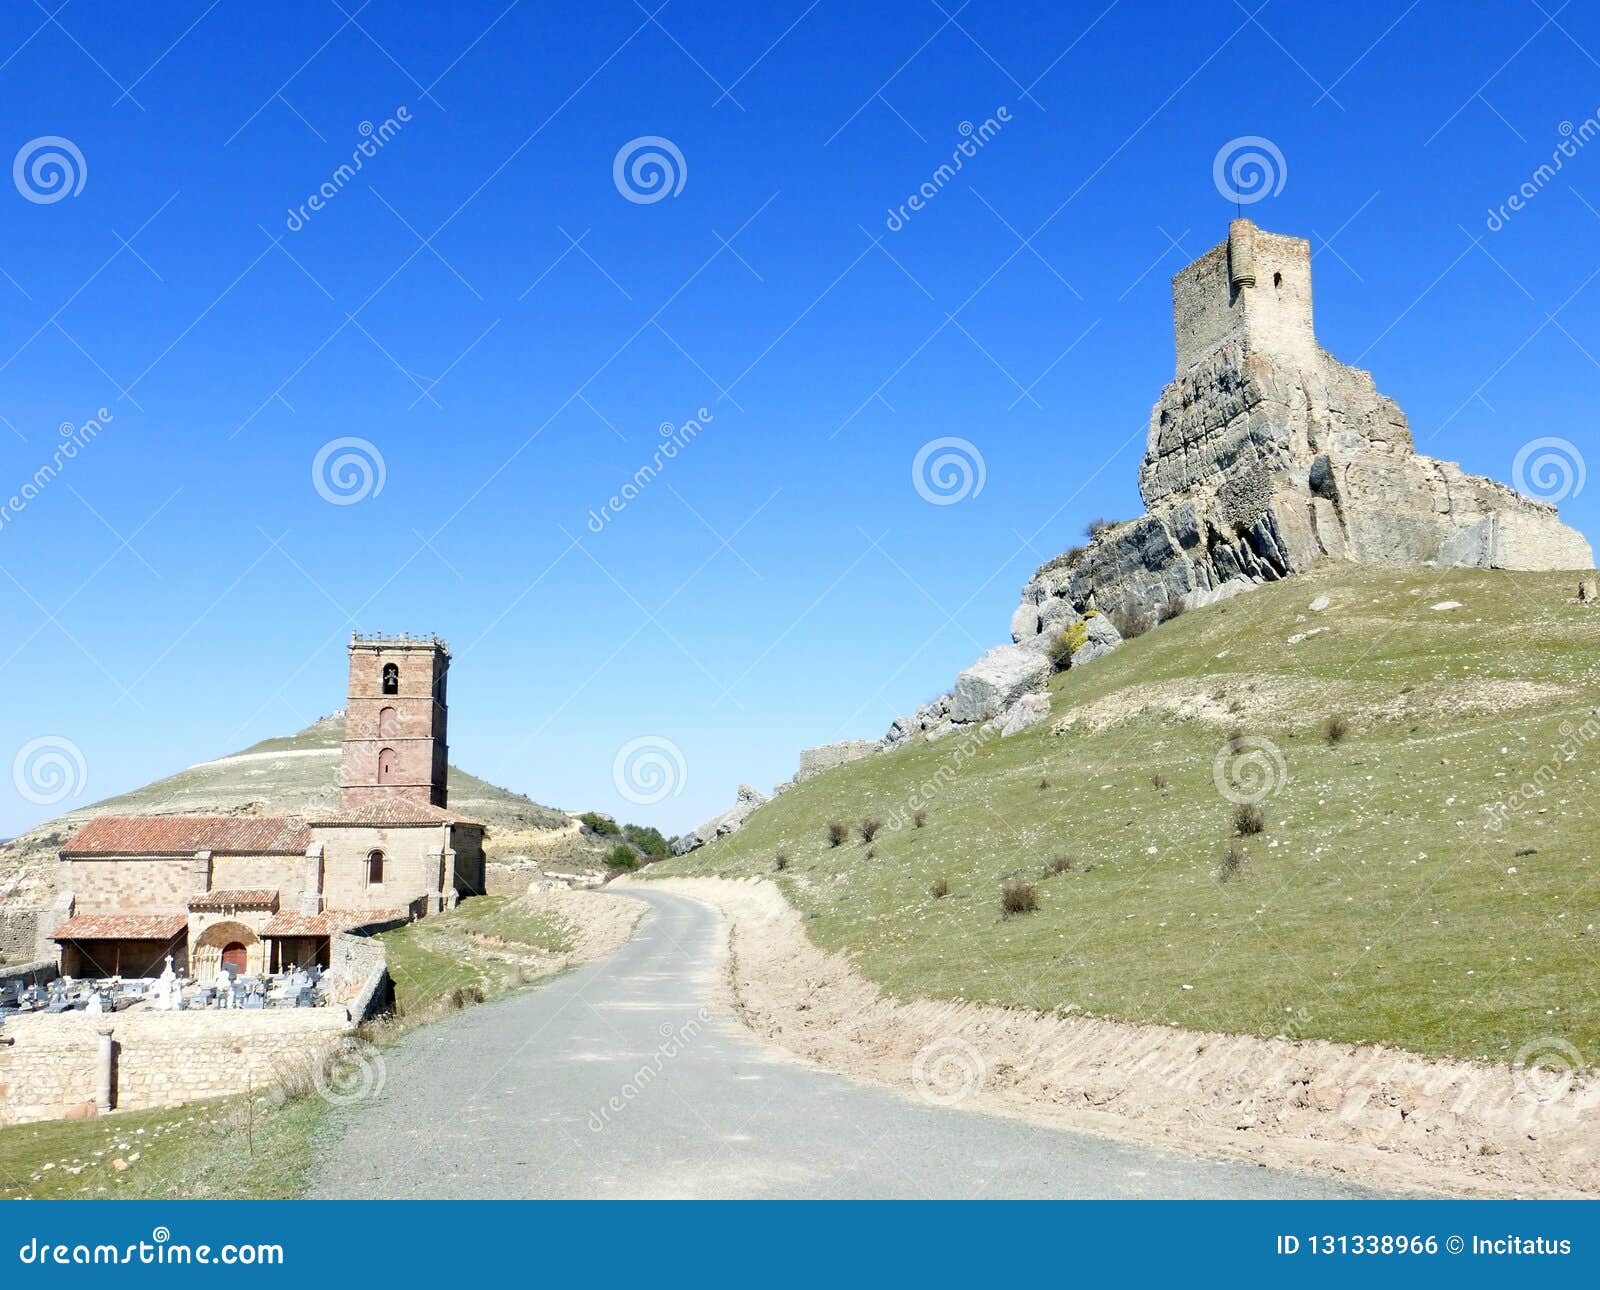 old castle in atienza, spain